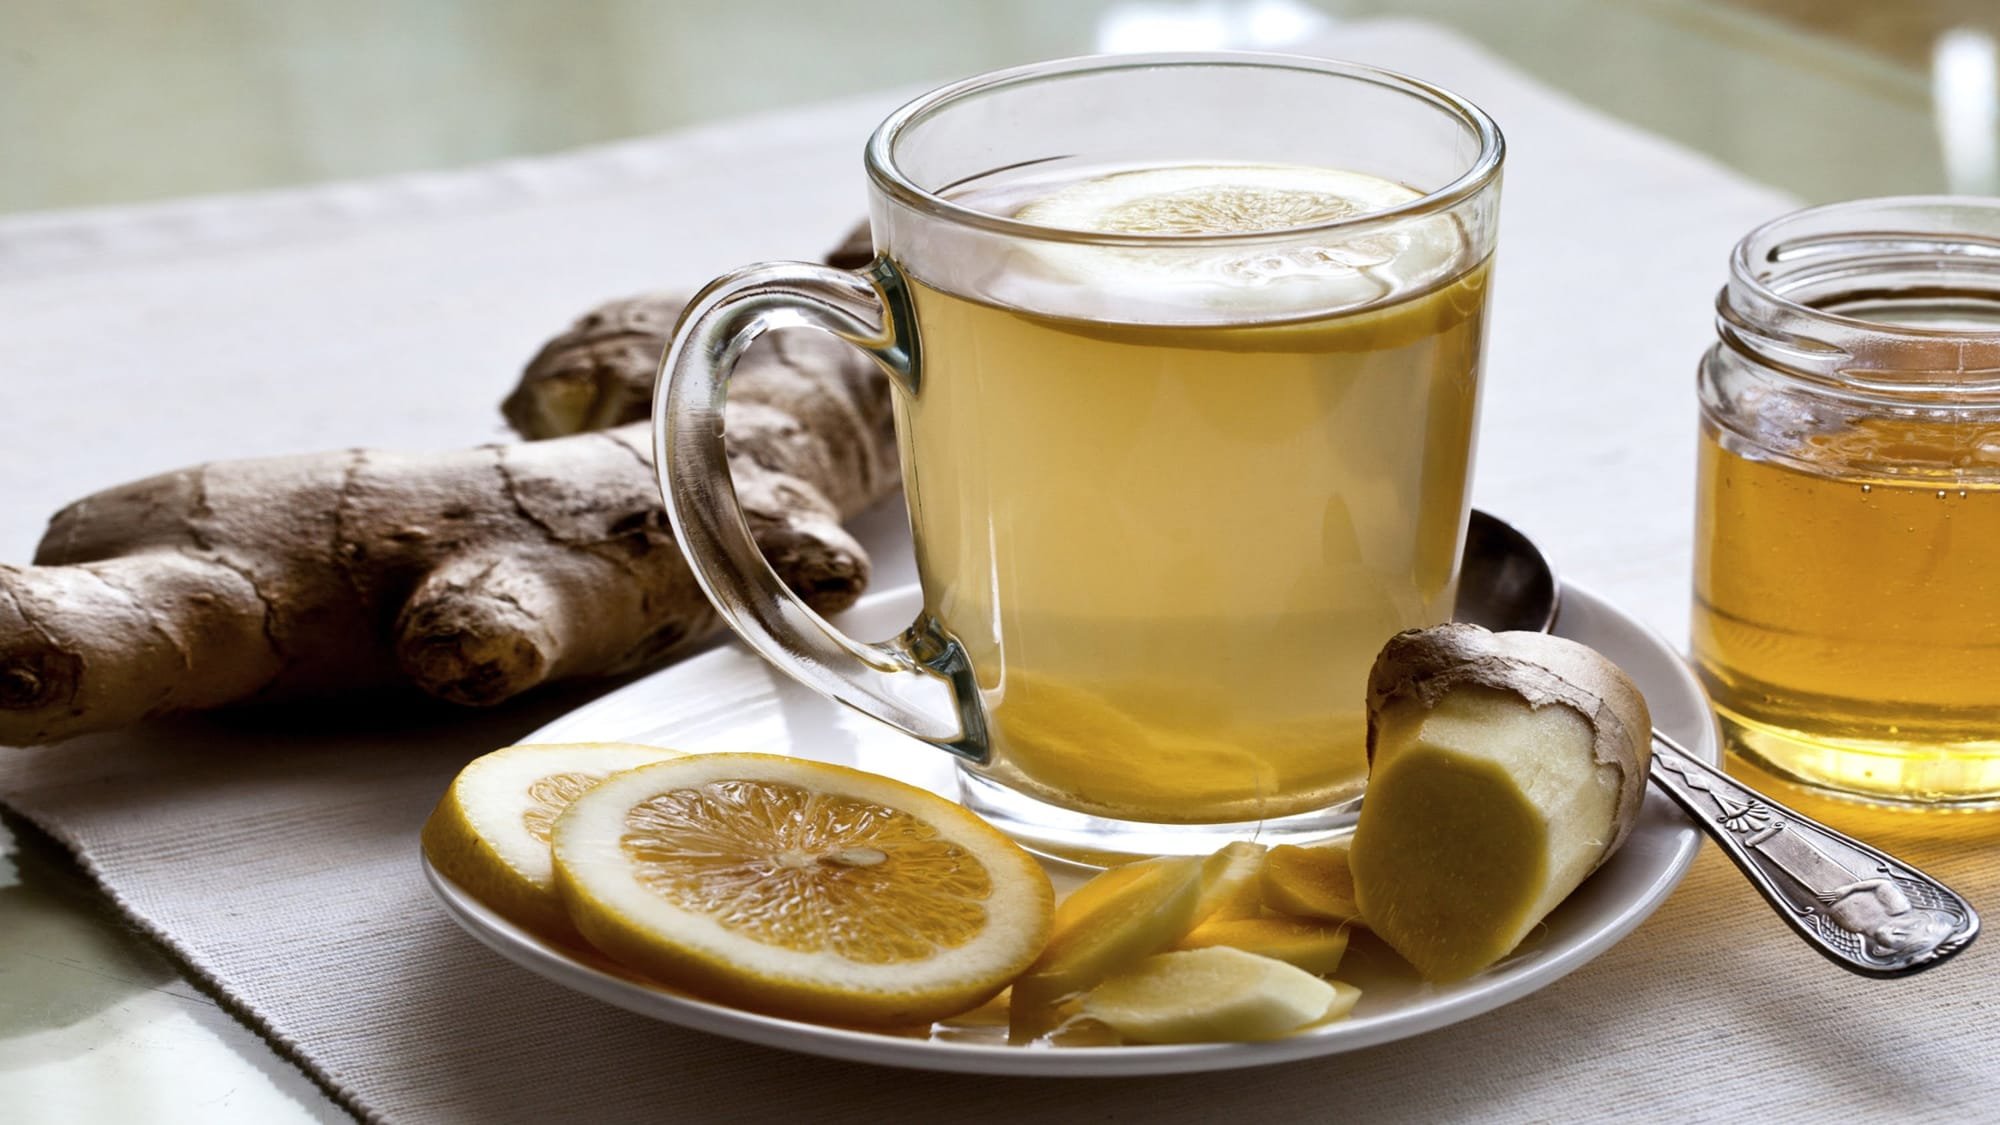 تحذير من تناول عصير الليمون الدافئ أو إضافته لمشروبات ساخنة